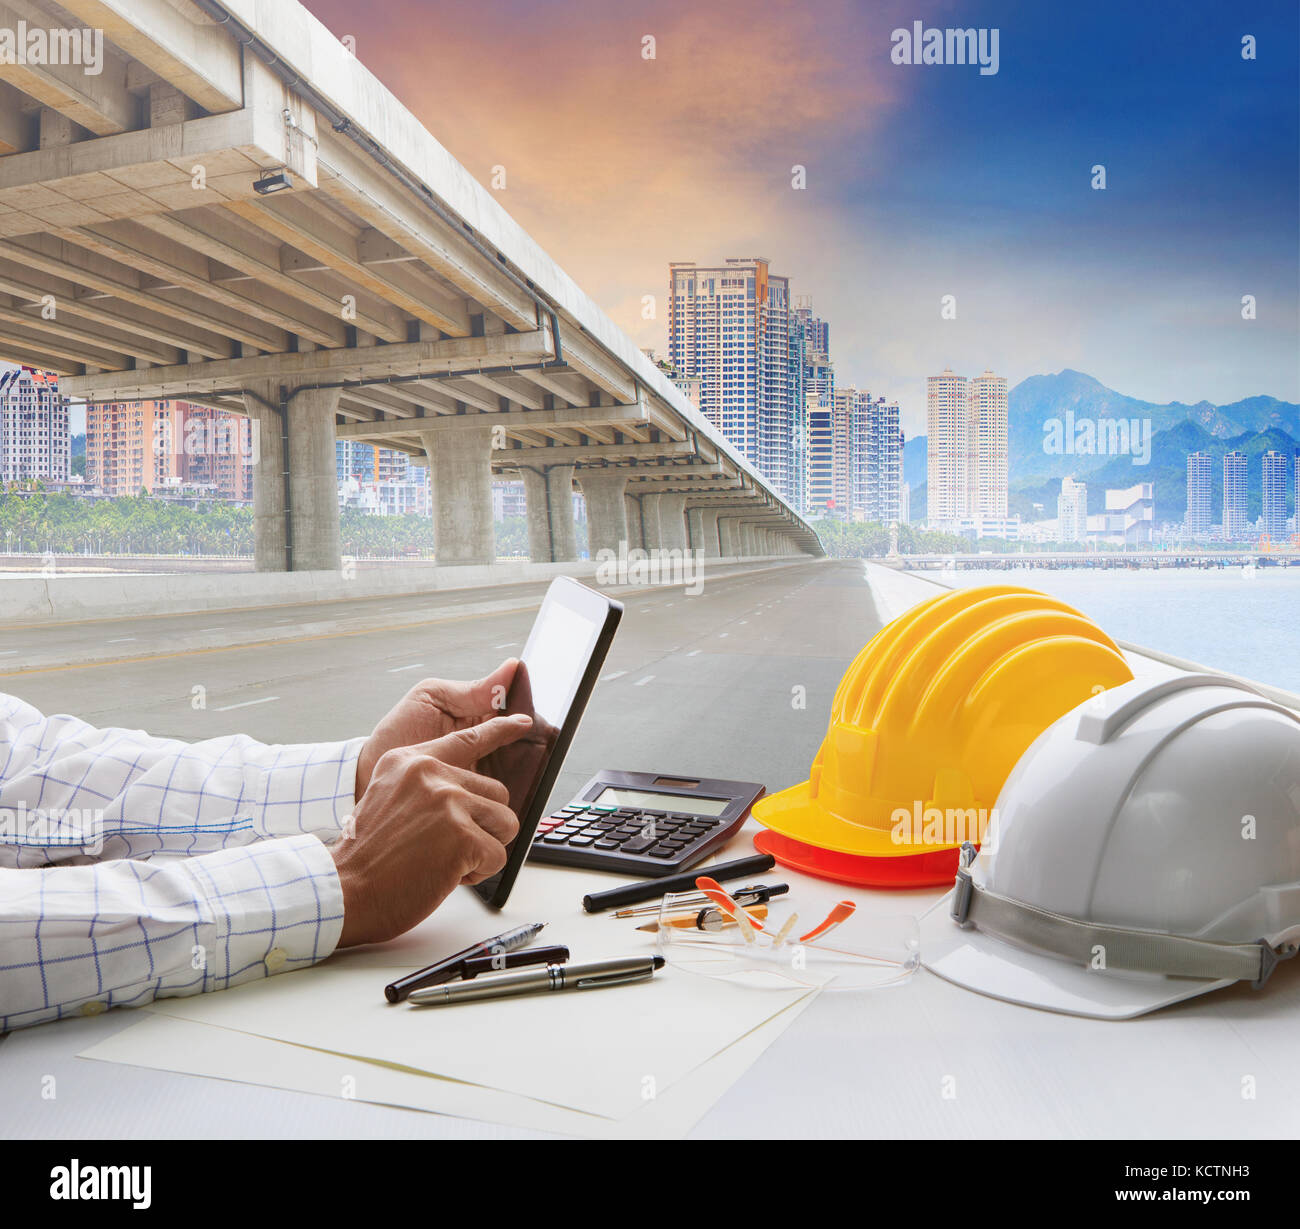 Tomar conciencia imán hará Ingeniero civil de la mesa de trabajo y construcción urbana con la infra  estructura de desarrollo Fotografía de stock - Alamy